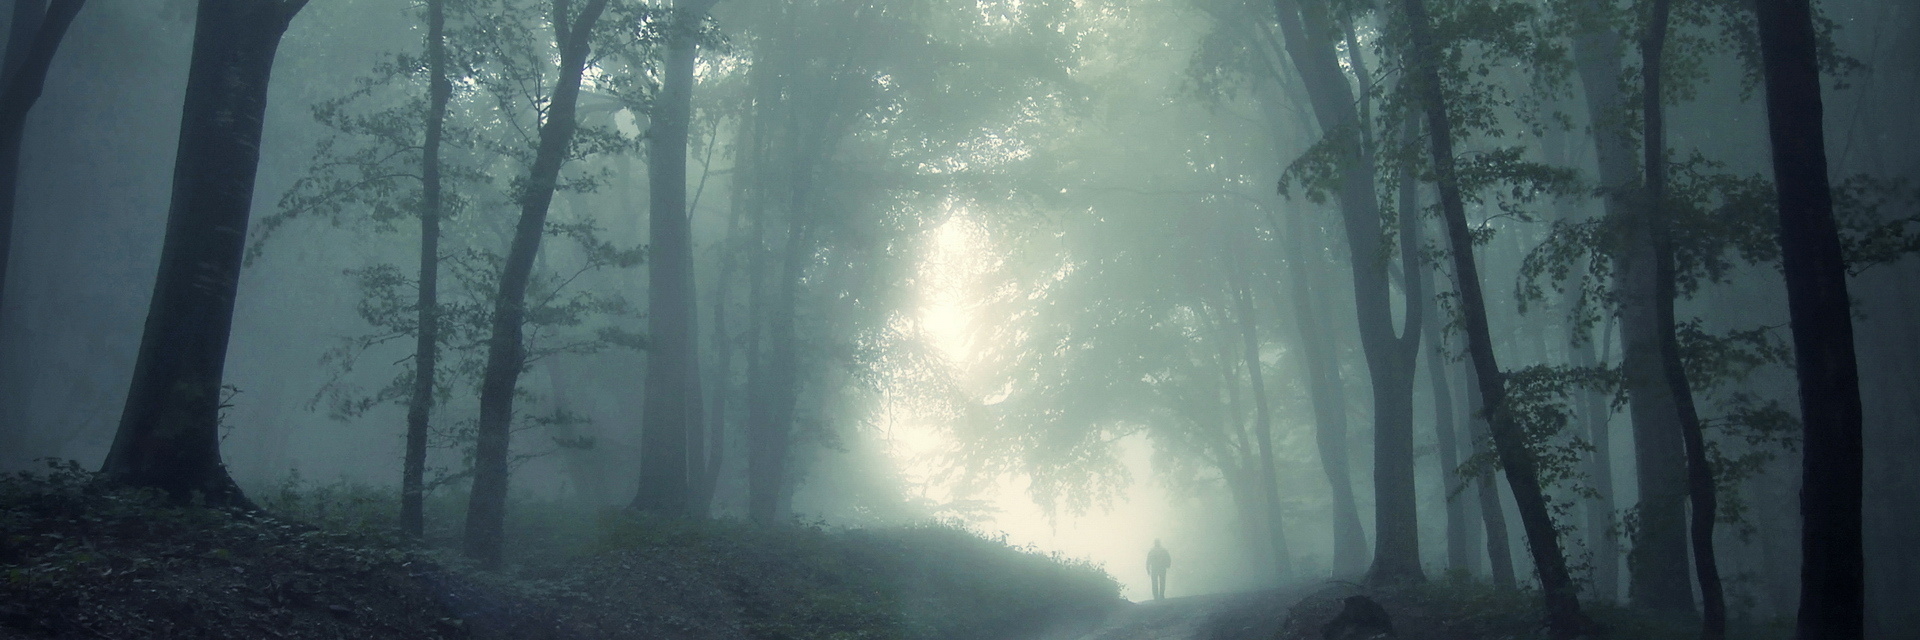 Вересковый лес в тумане